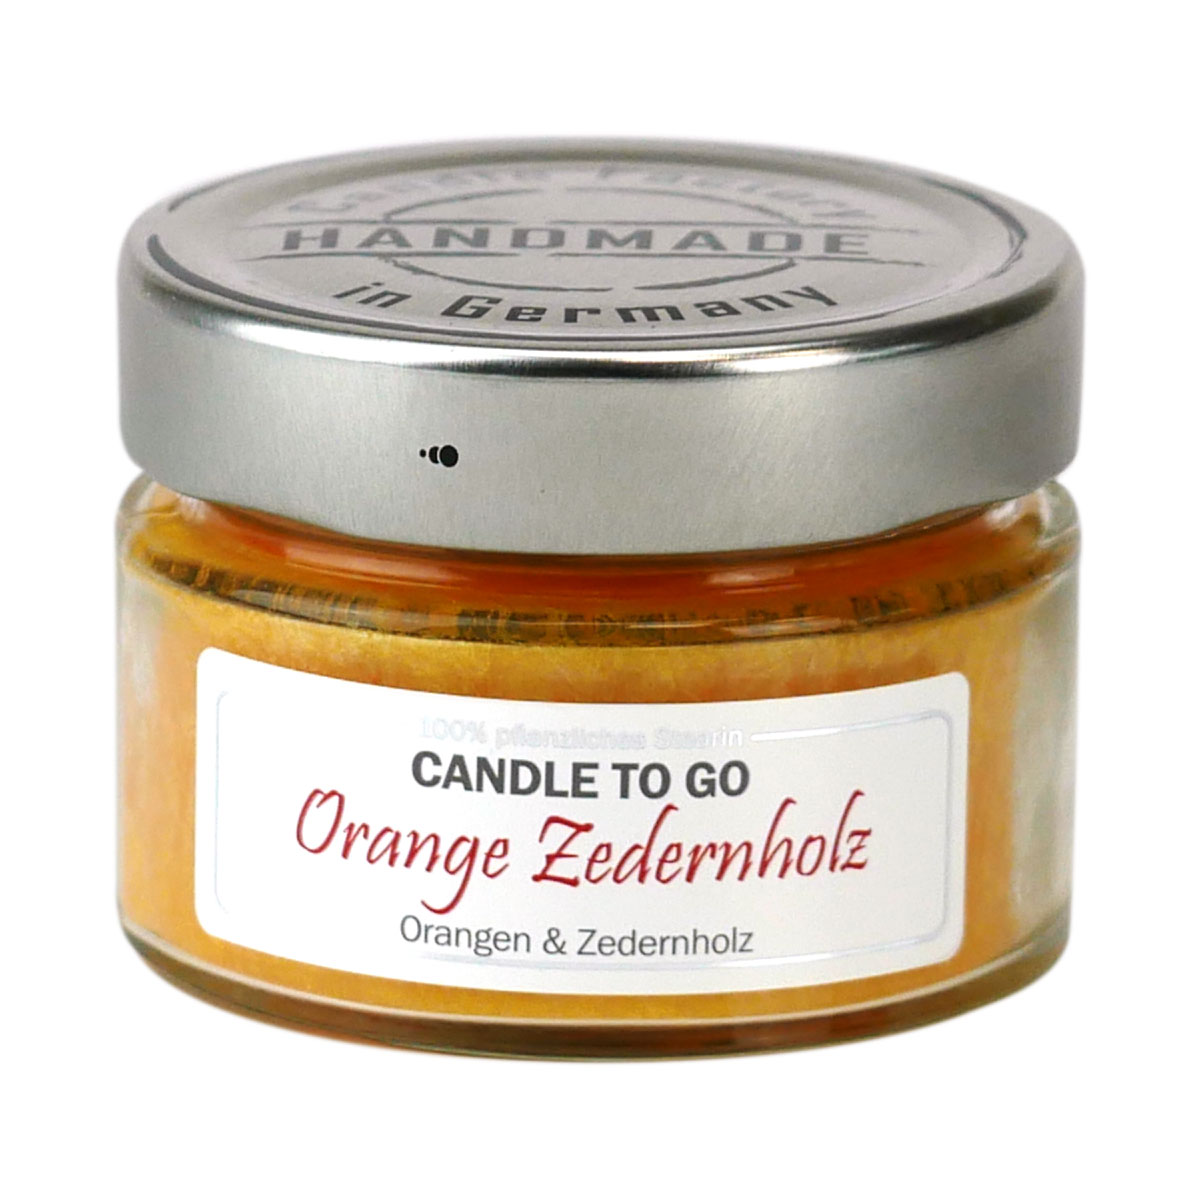 Orange Zedernholz - Candle to Go die Duftkerze für unterwegs